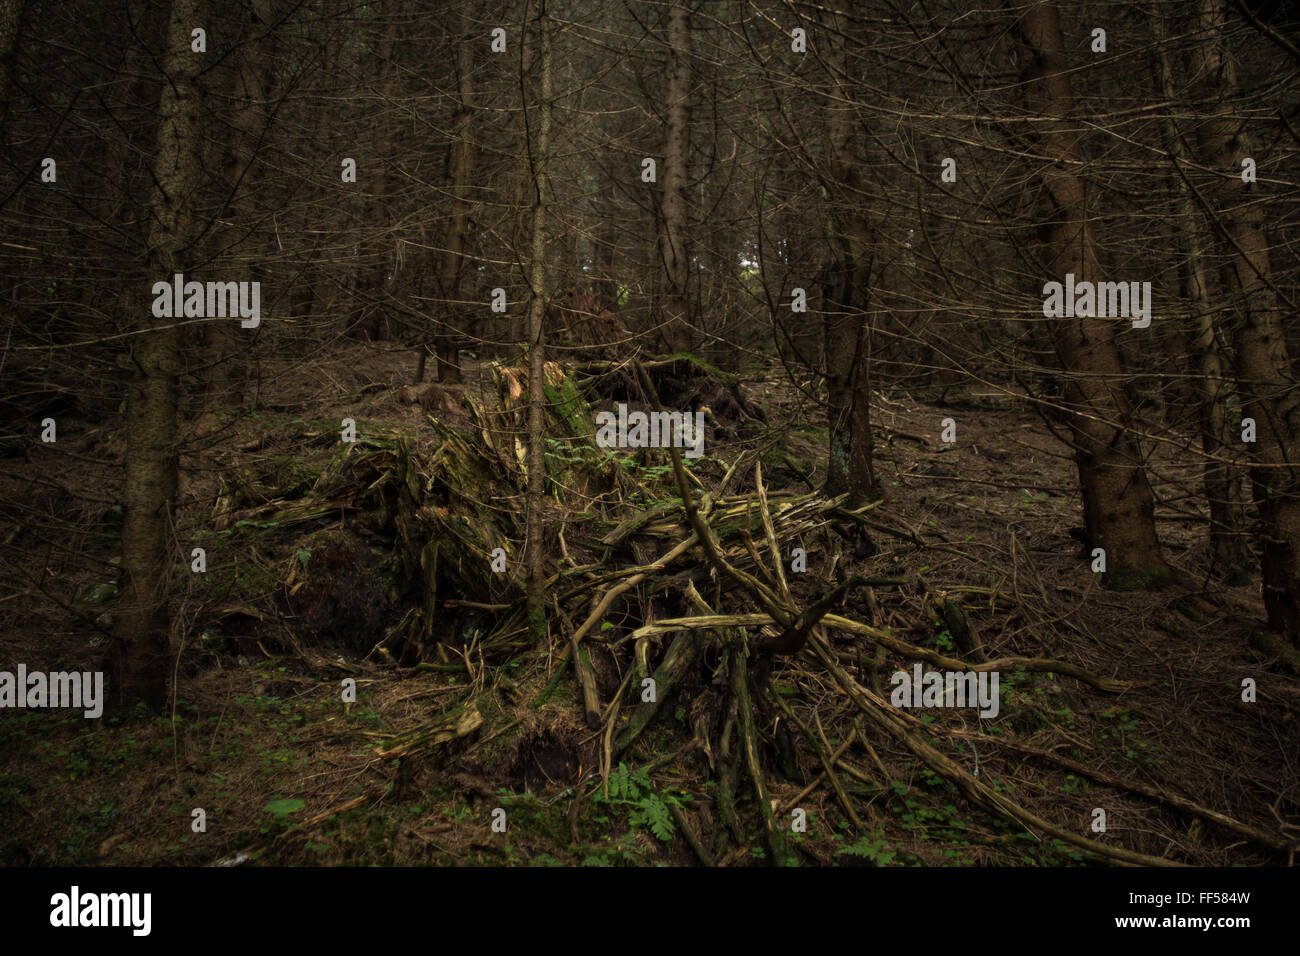 Bild von einem dunklen, geheimnisvollen Wald Stockfoto